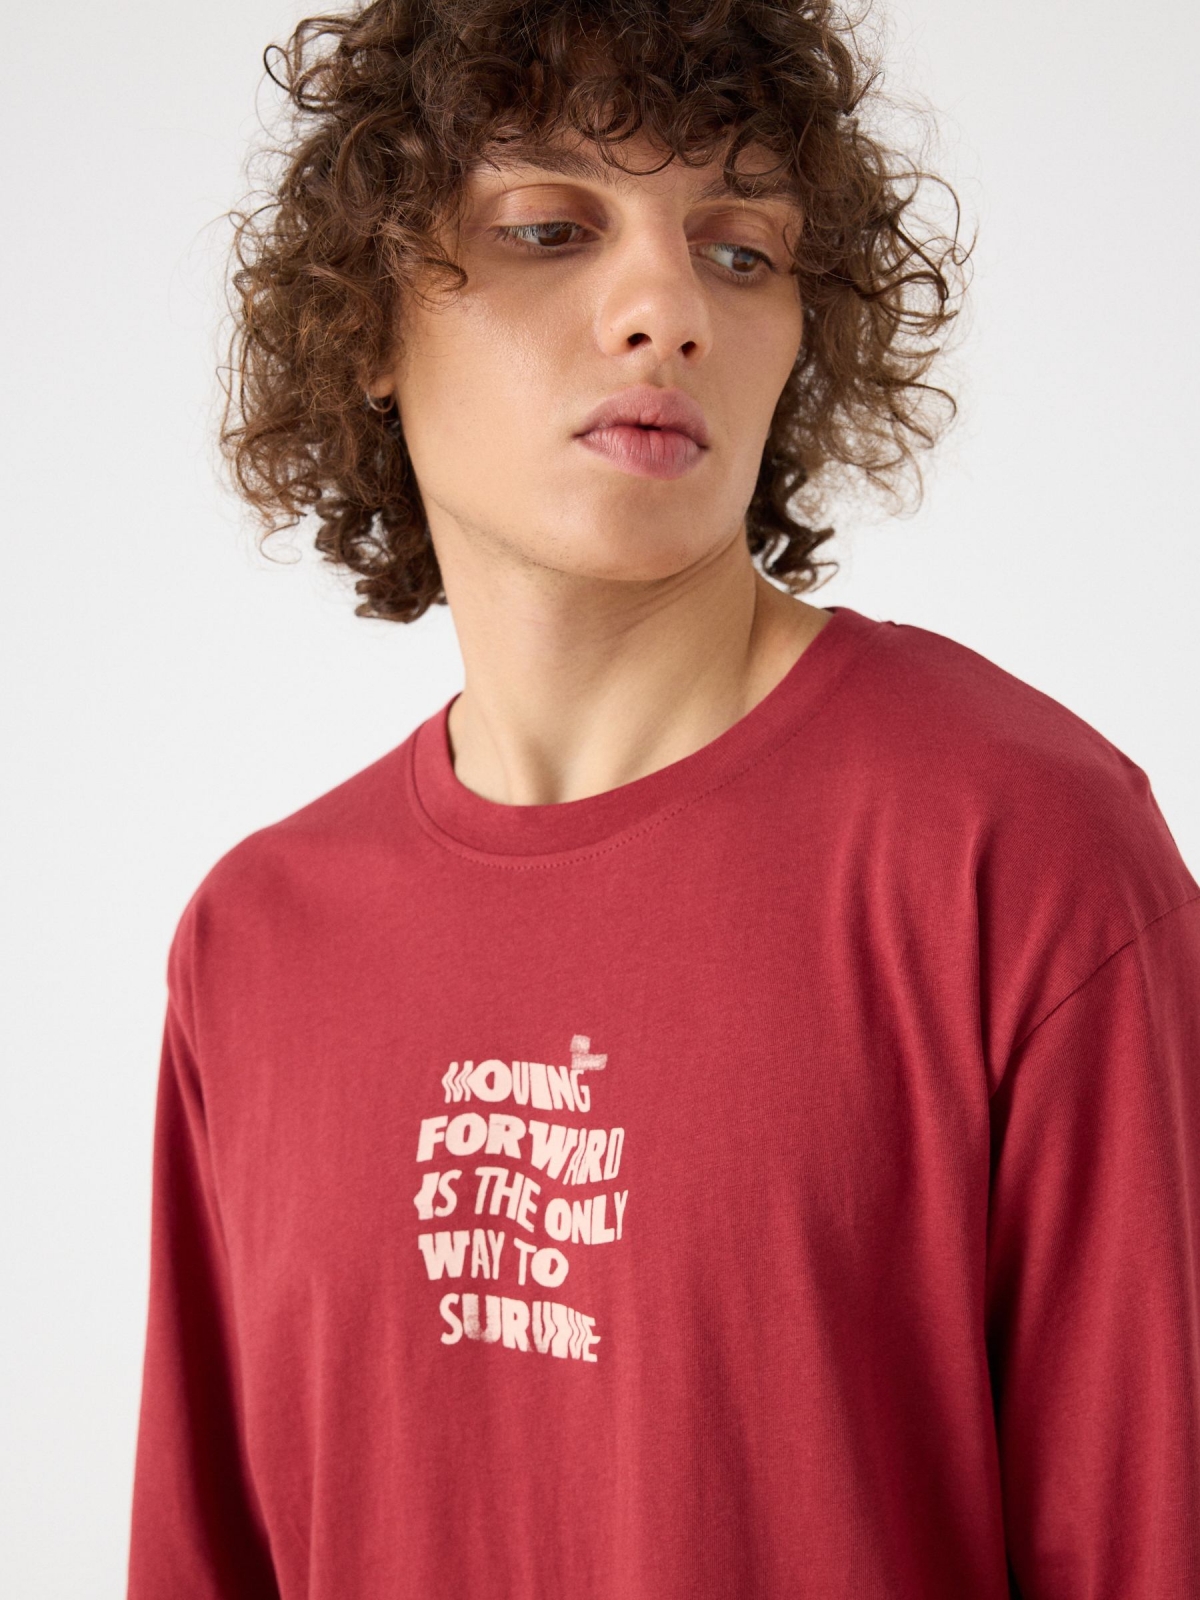 Camiseta estampado doble texto rojo vista detalle